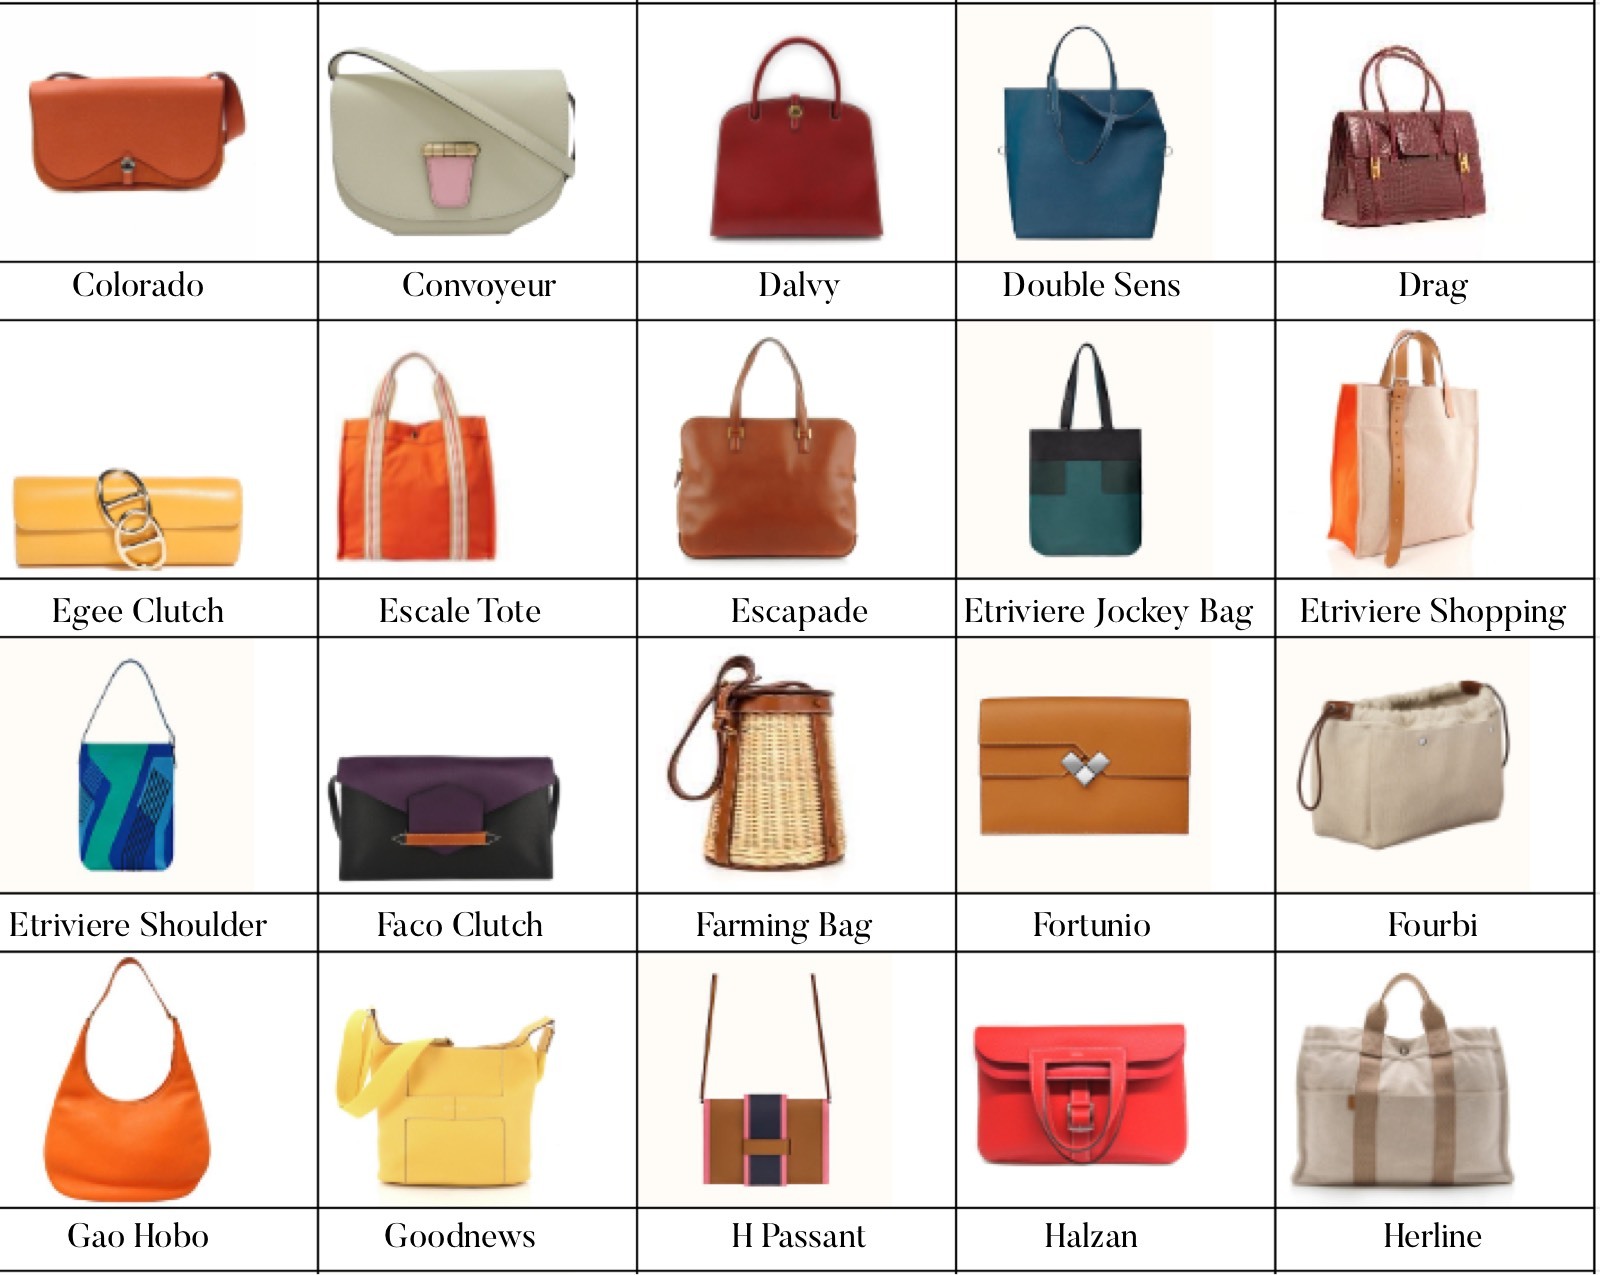 Название моделей сумок. Модели сумок Хермес. Сумки Эрмес модели. Названия сумок Эрмес. Формы сумок женских.